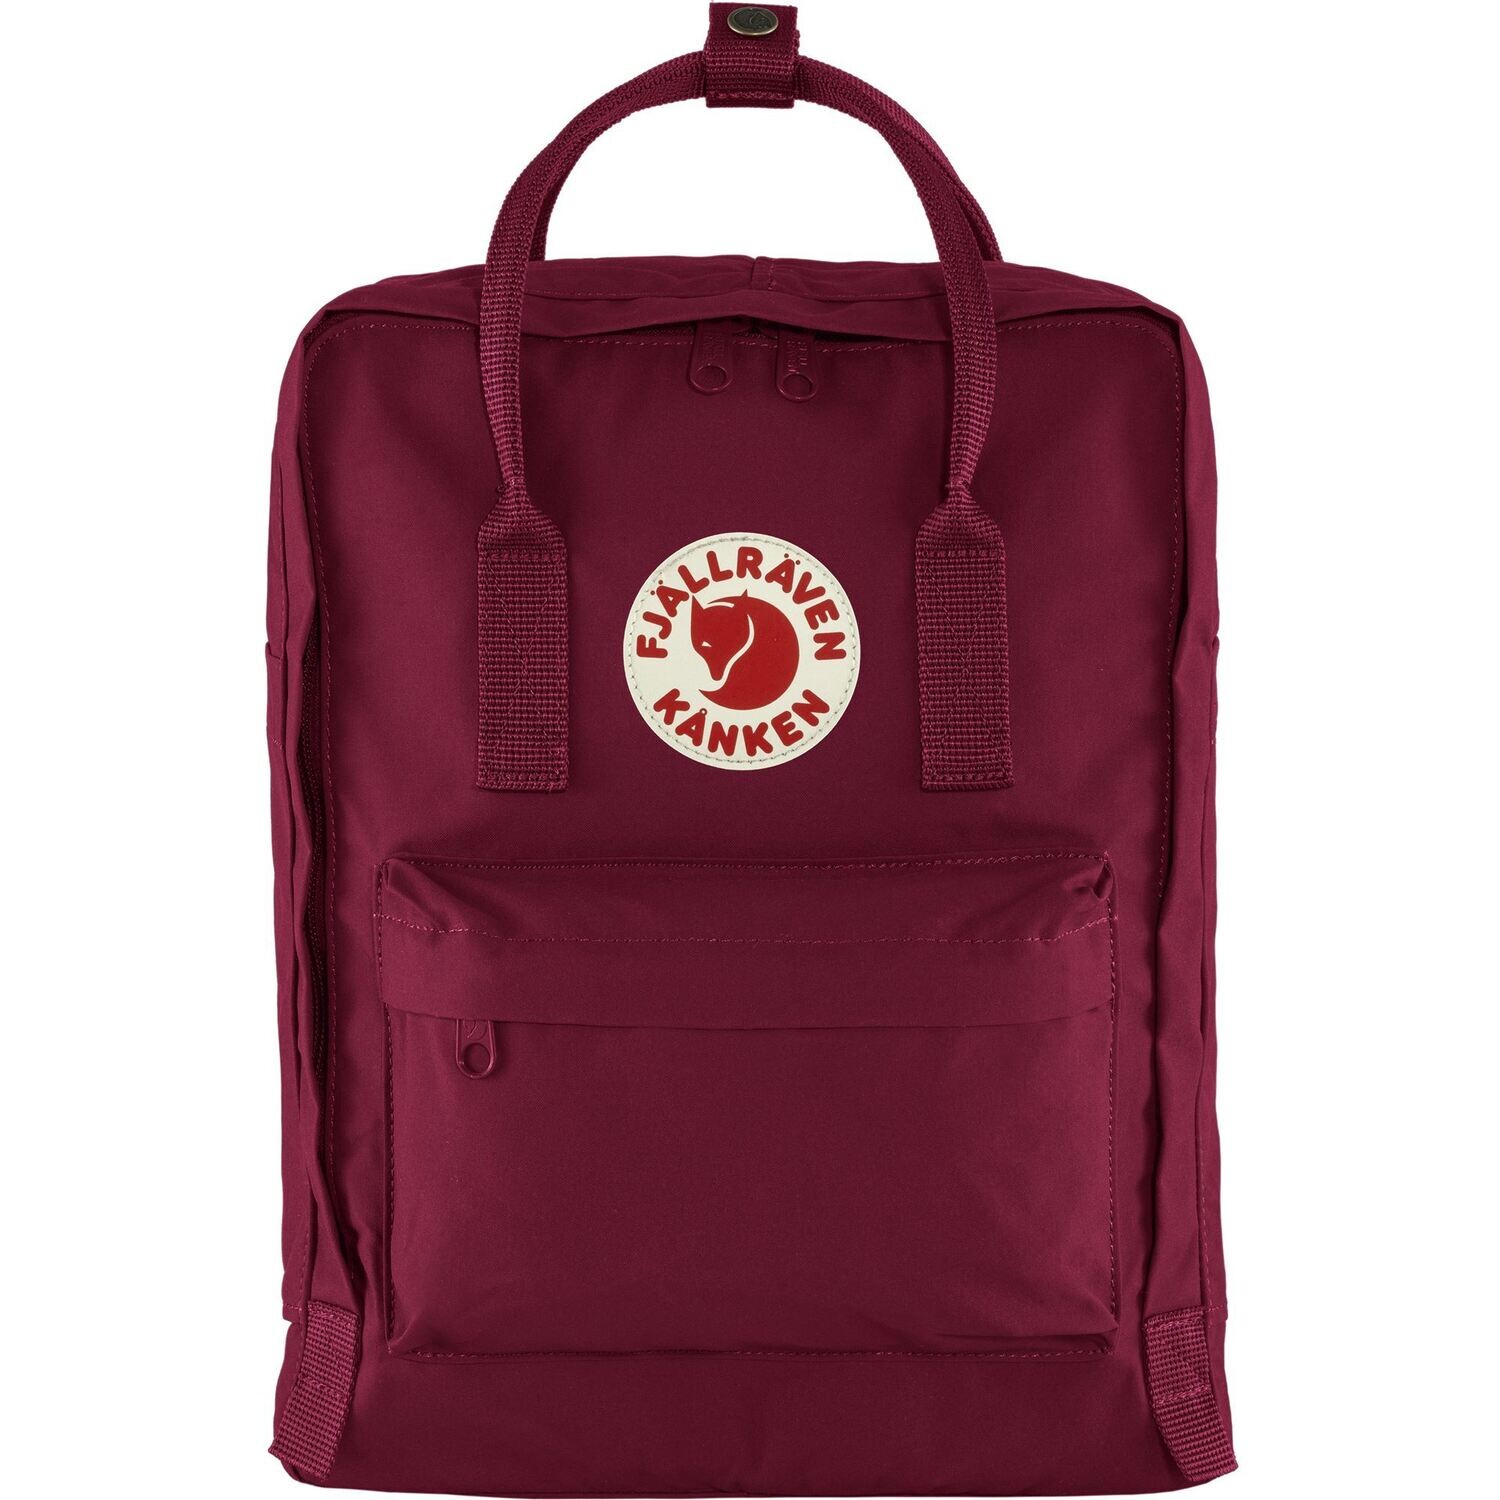 Fjallraven Kanken 狐狸袋 背囊 書包戶外背包 School bag outdoor backpack 16L - Plum 23510 -420